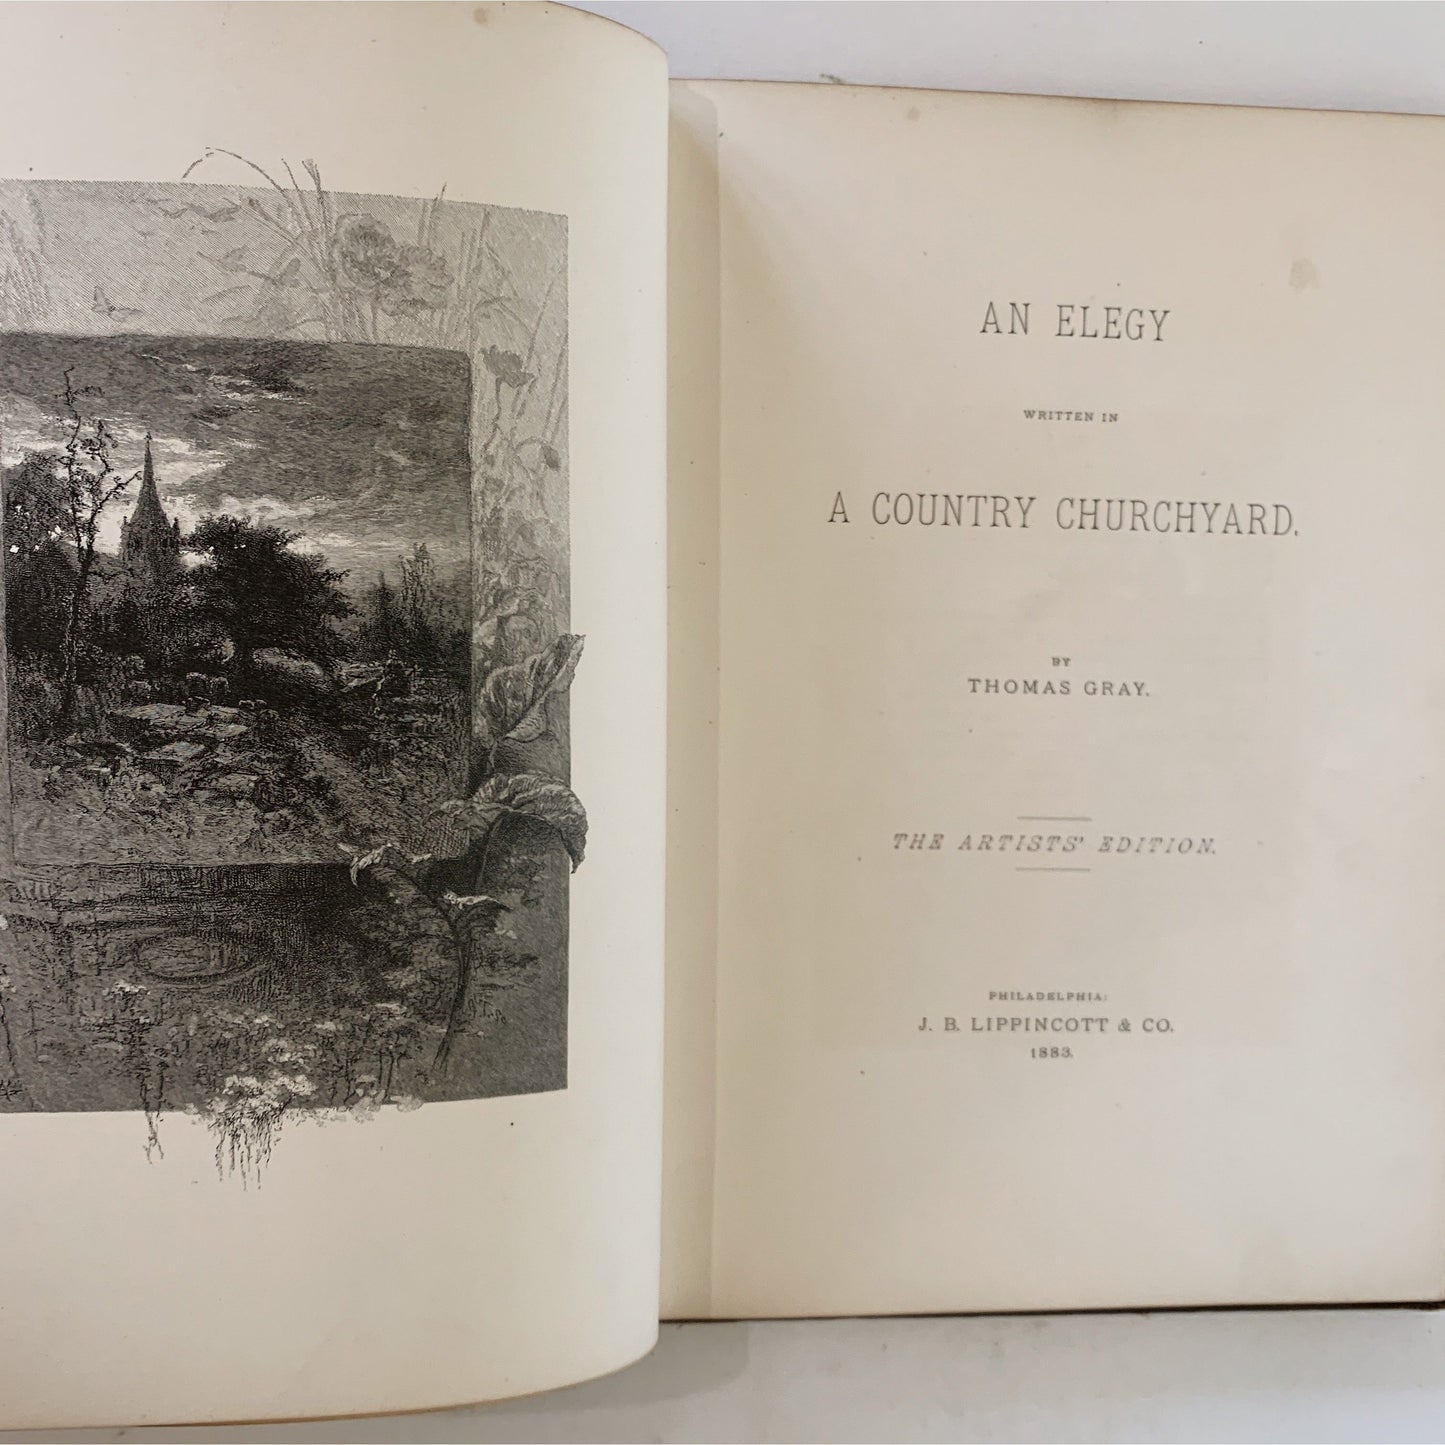 Gray's Elegy, Artist's Edition, An Elegy Written in a Country Churchyard, 1883